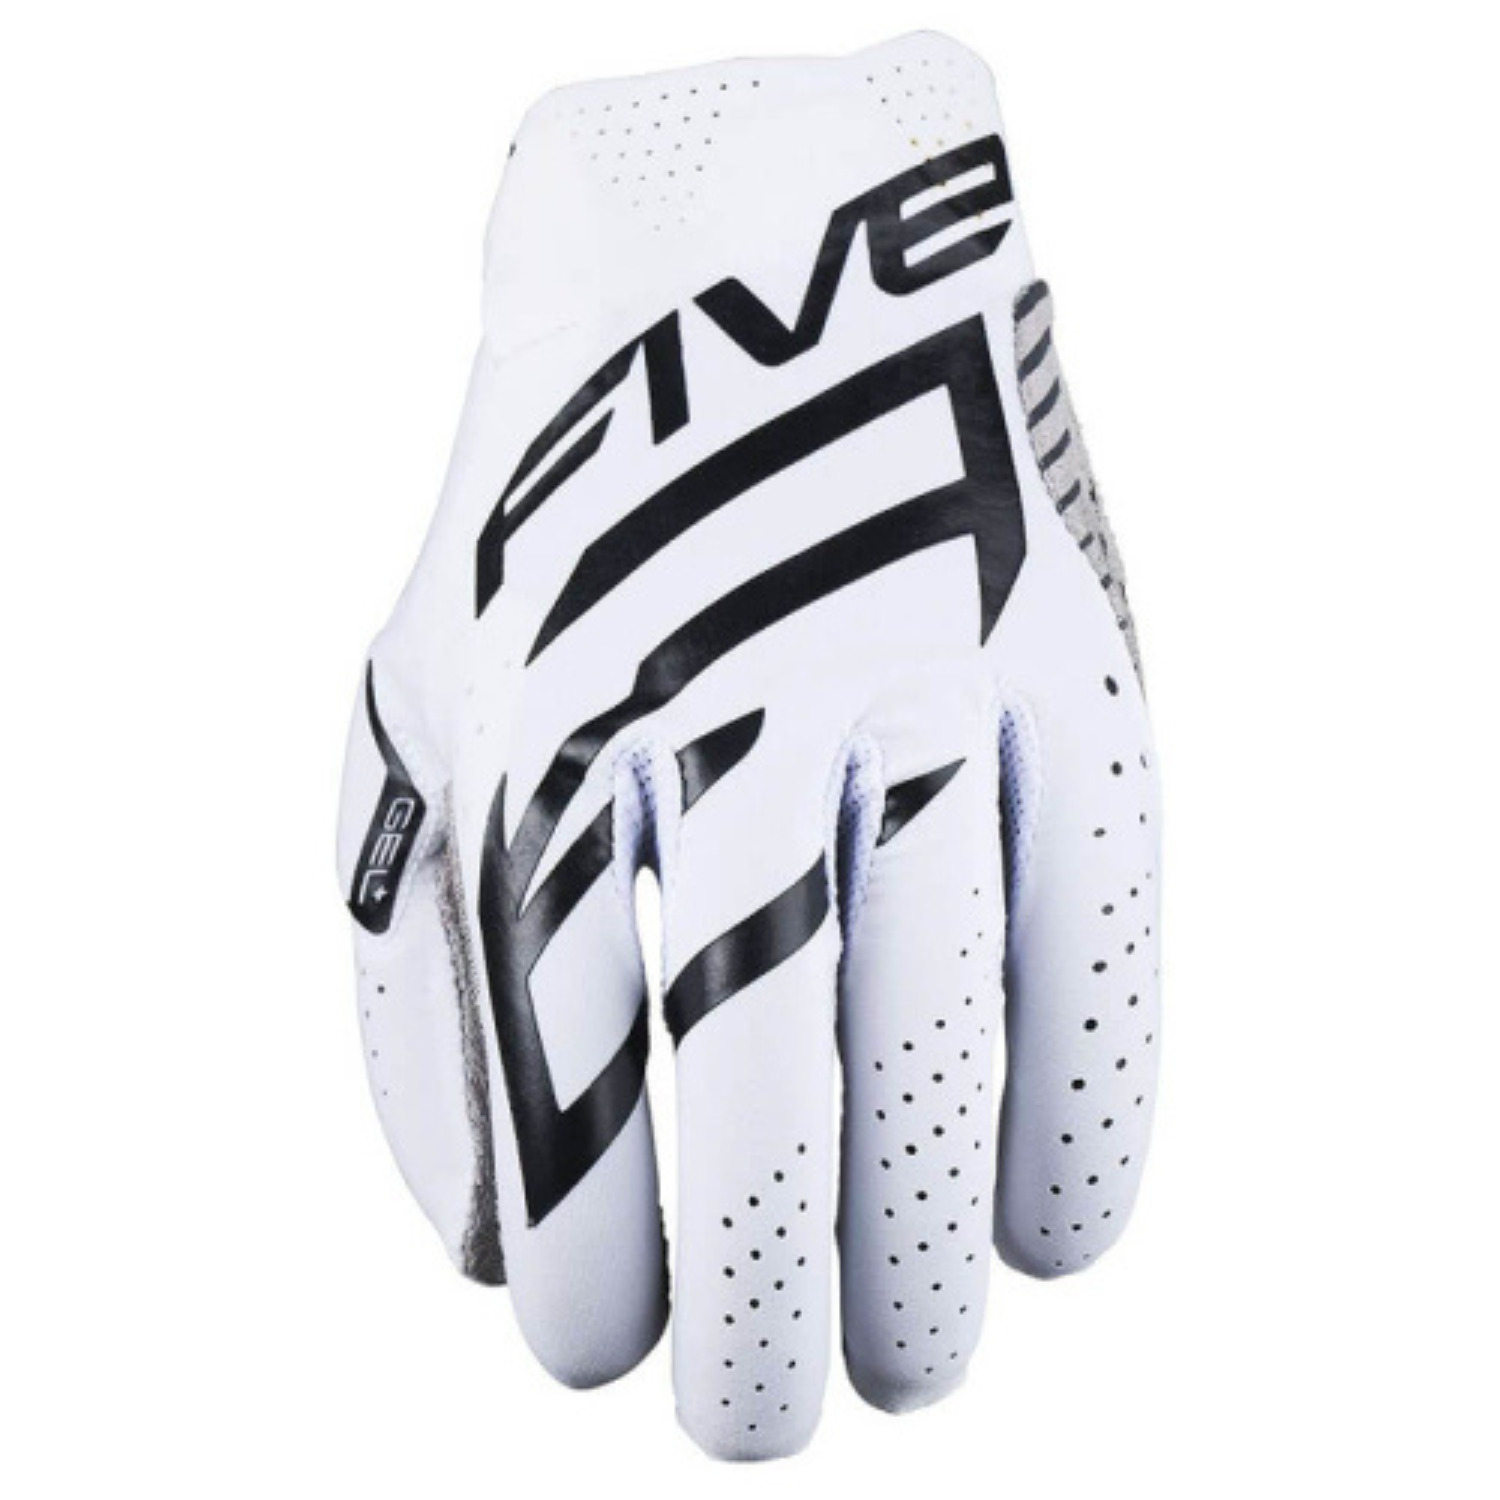 Five MXF Race Gloves White Black Size L